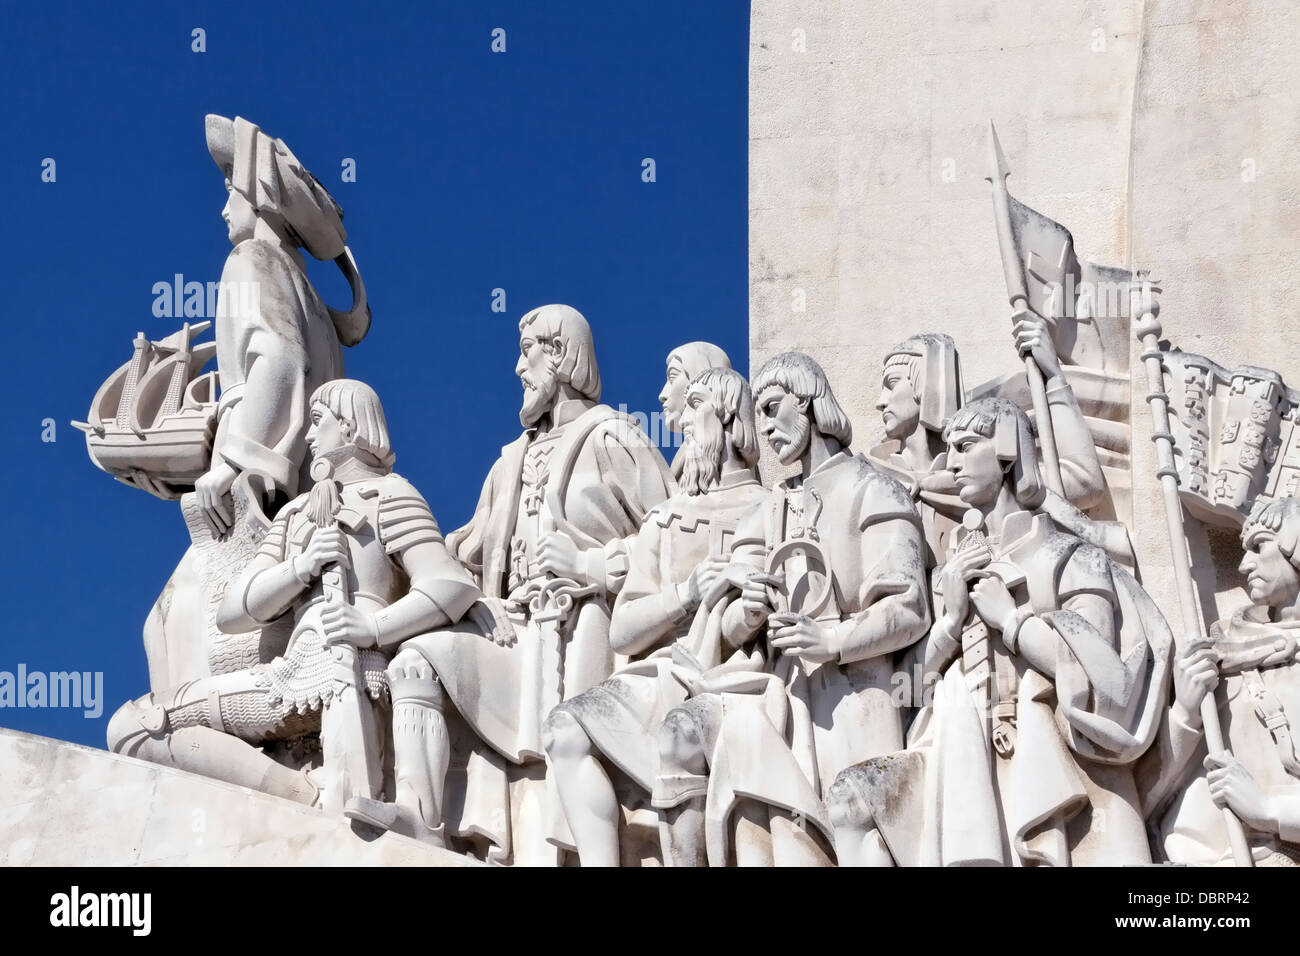 Padrão dos Descobrimentos, un monument en l'honneur de l'âge de la découverte au cours du xve et xvie siècles, Lisbonne. Banque D'Images